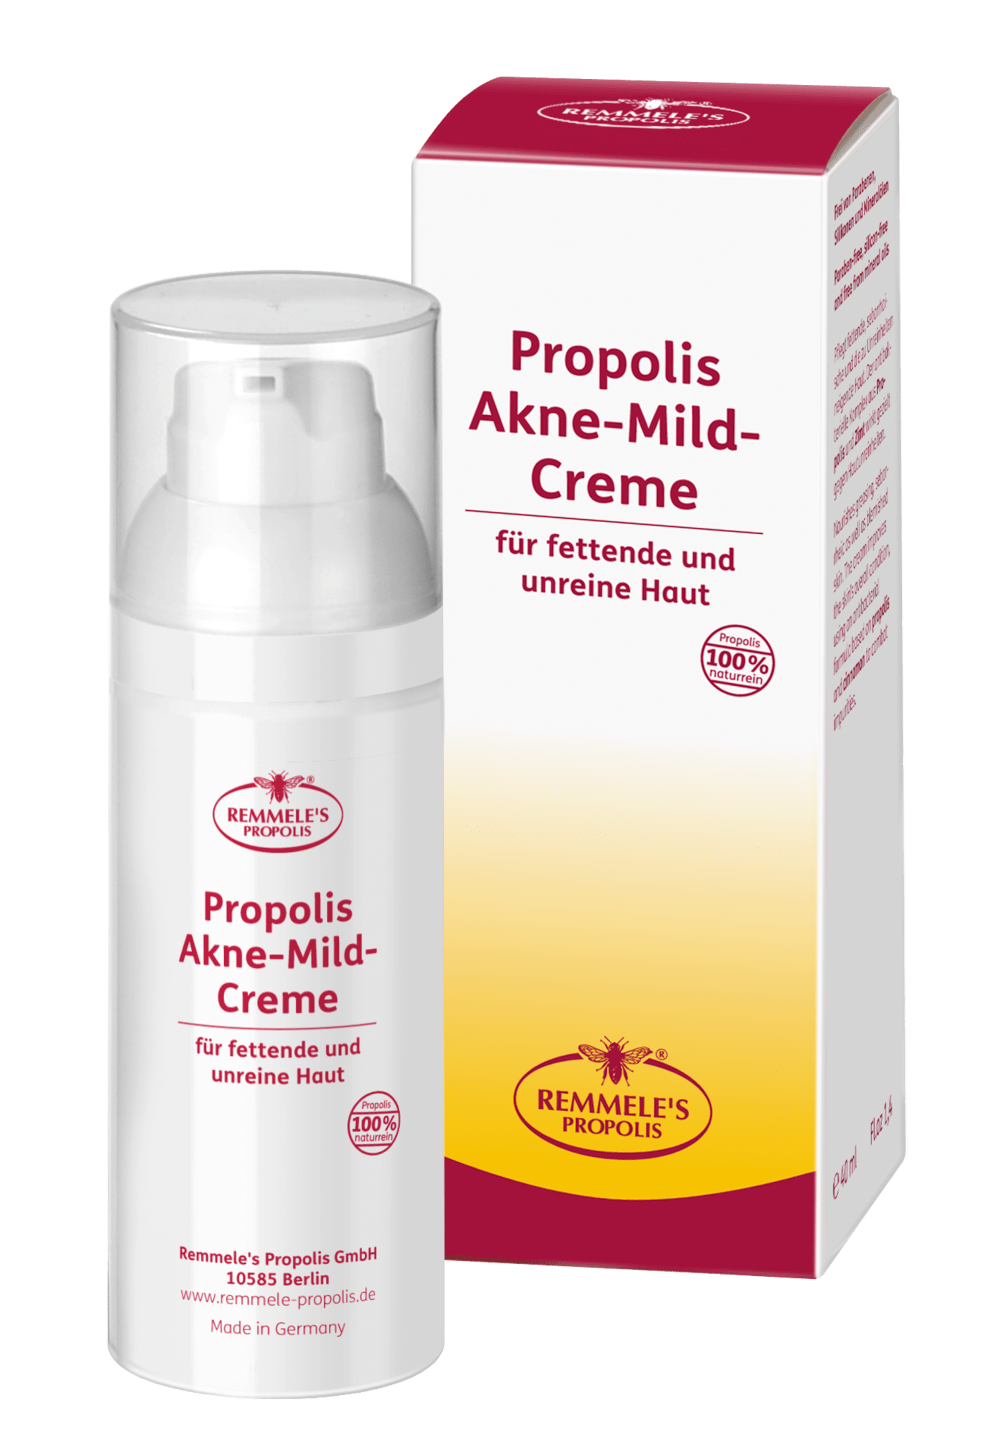 Remmele's Propolis - Propolis Akne-Mild-Creme, 40 ml